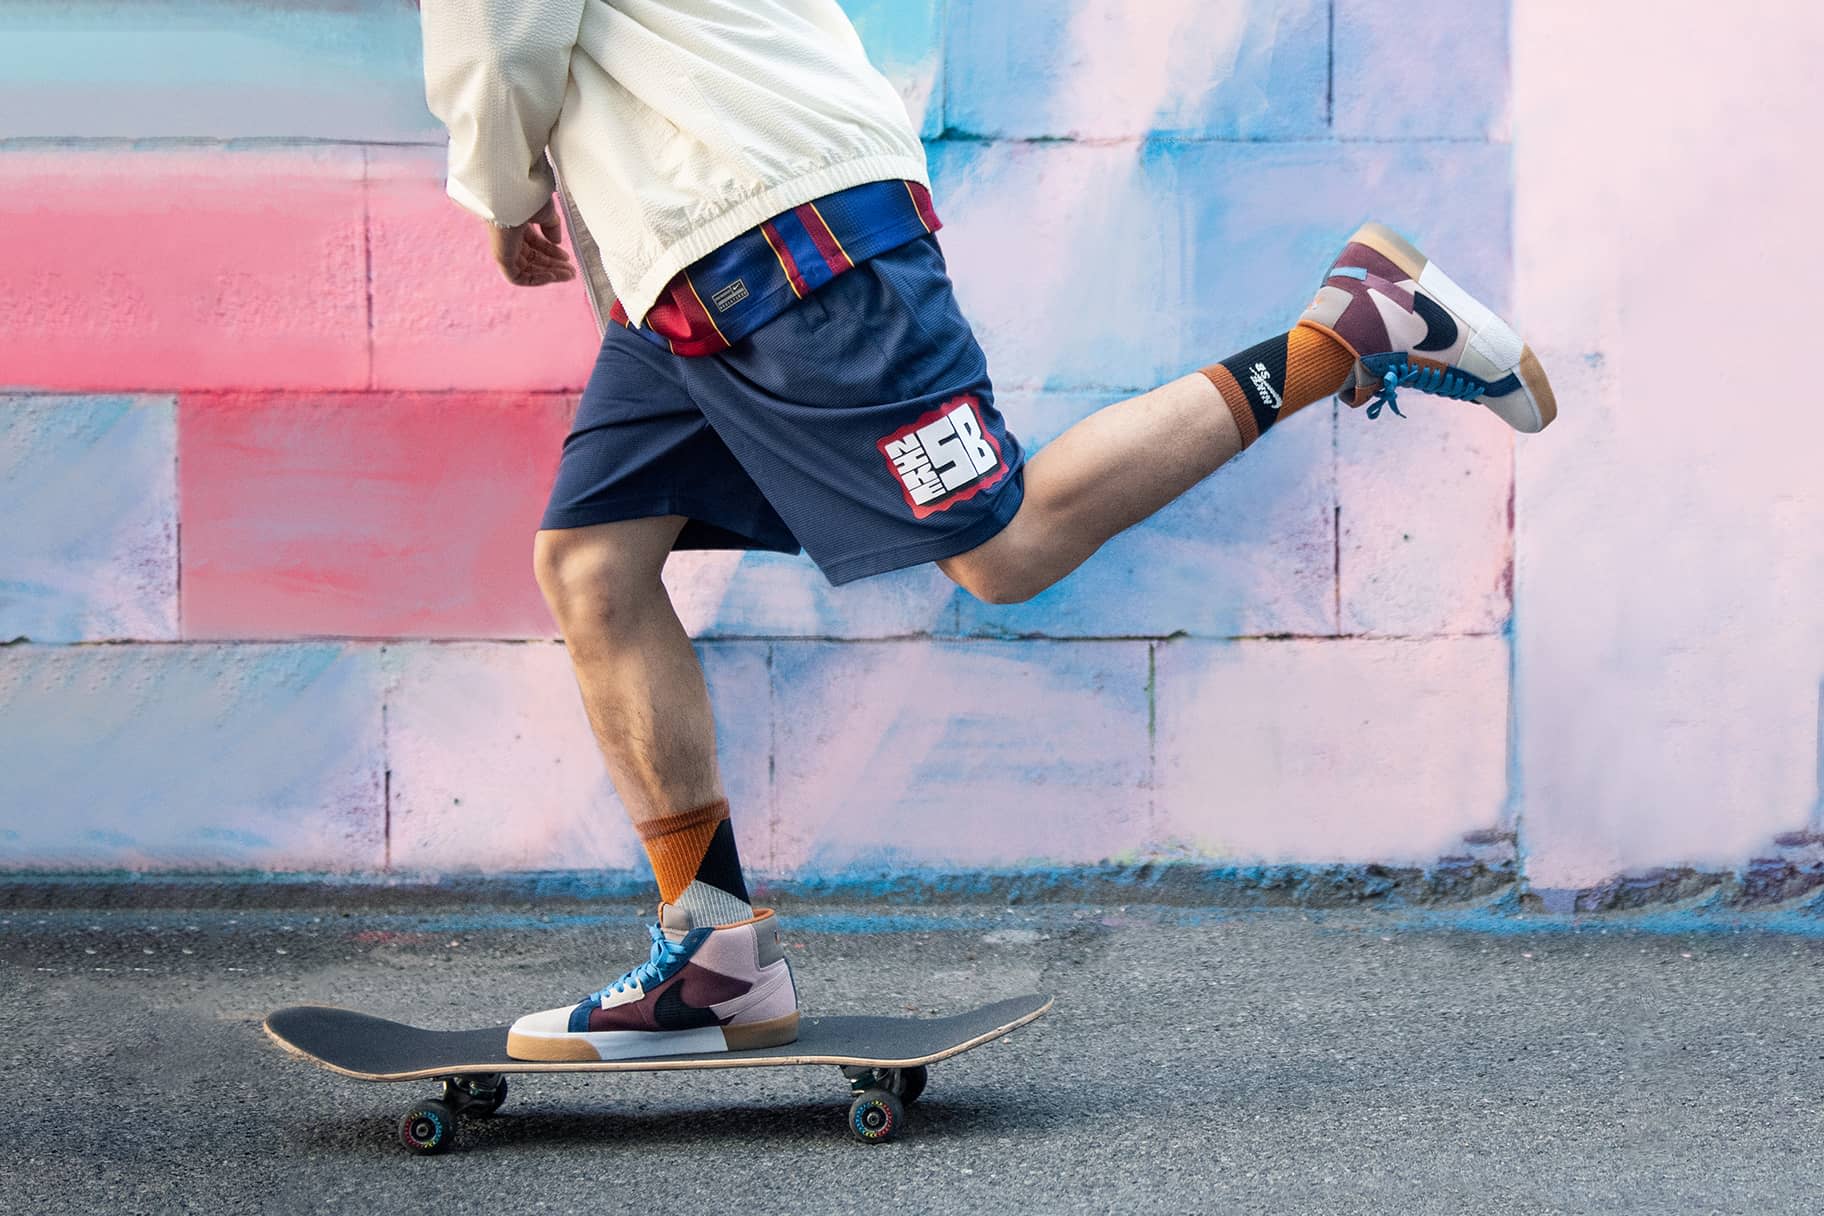 Com començar a fer skateboard si ets adult